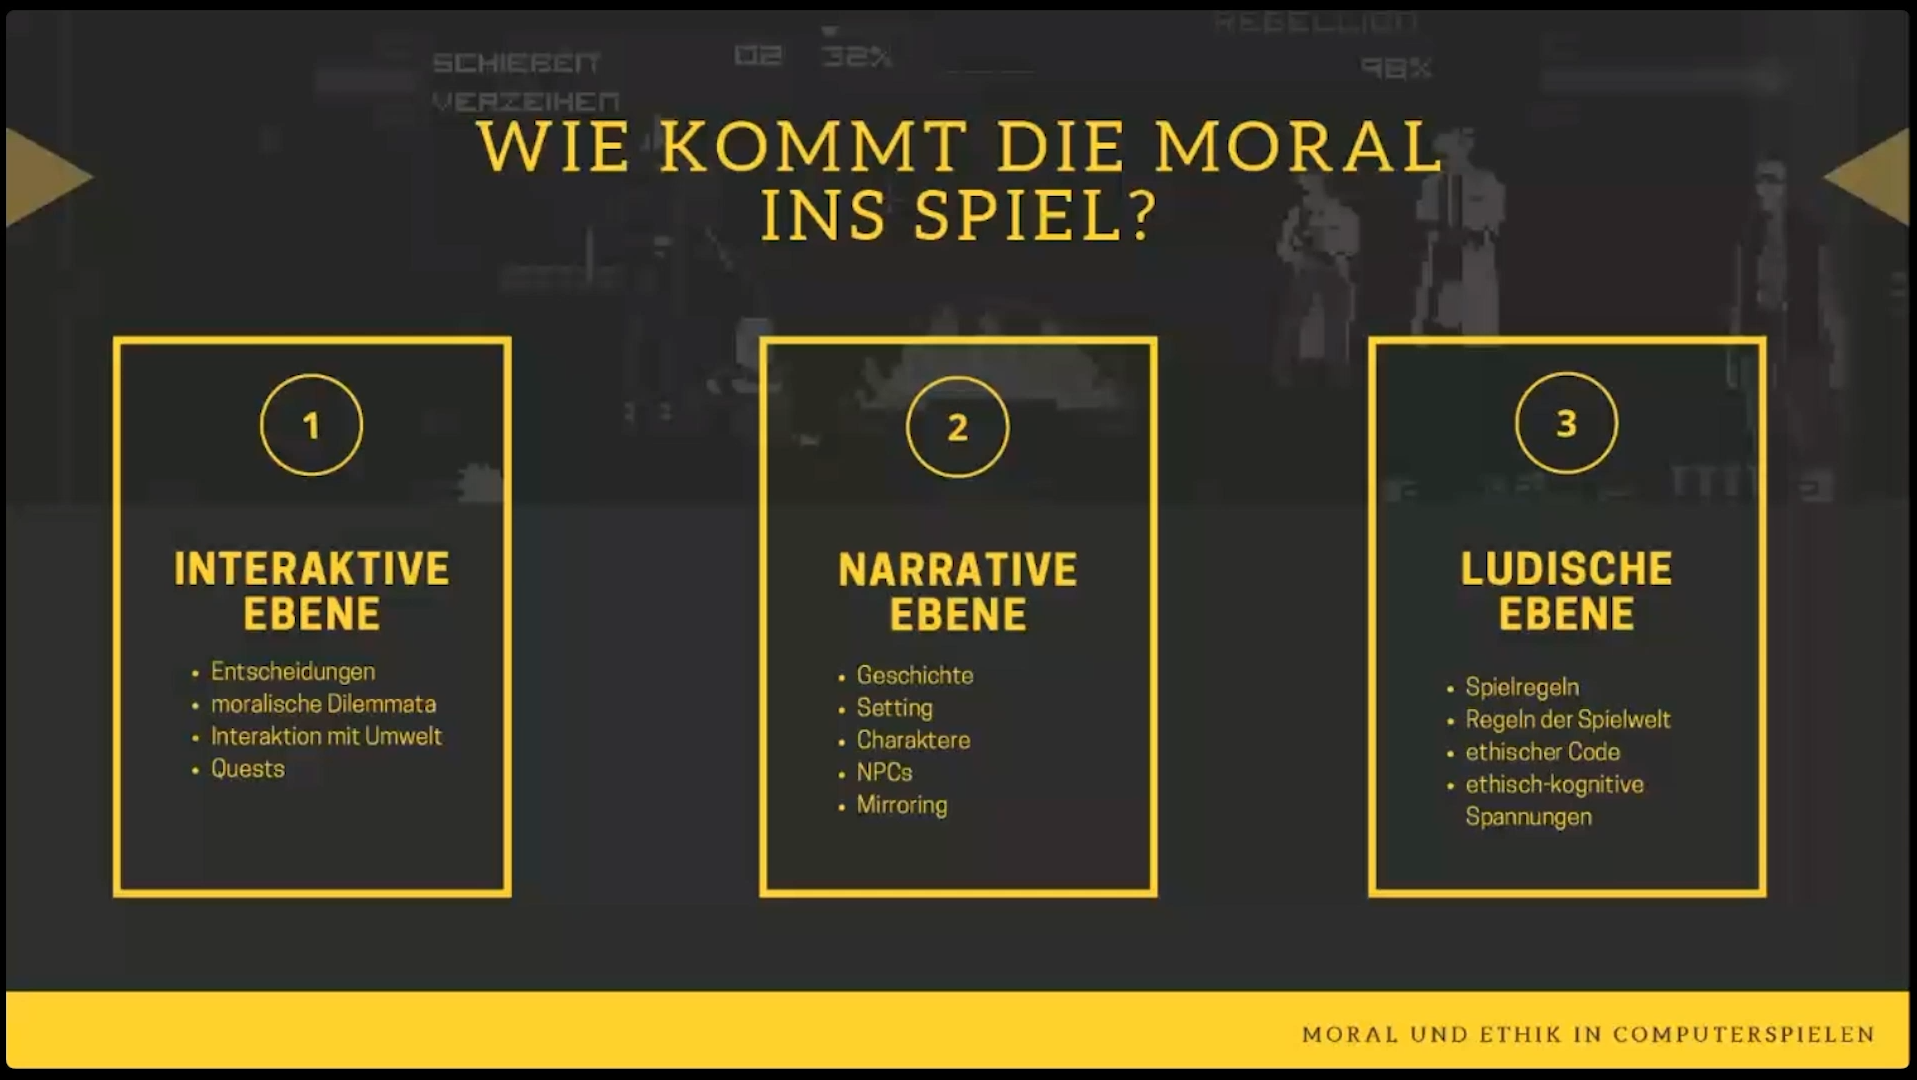 Die 3 Ebenen der Moral und Ethik in Spielen.